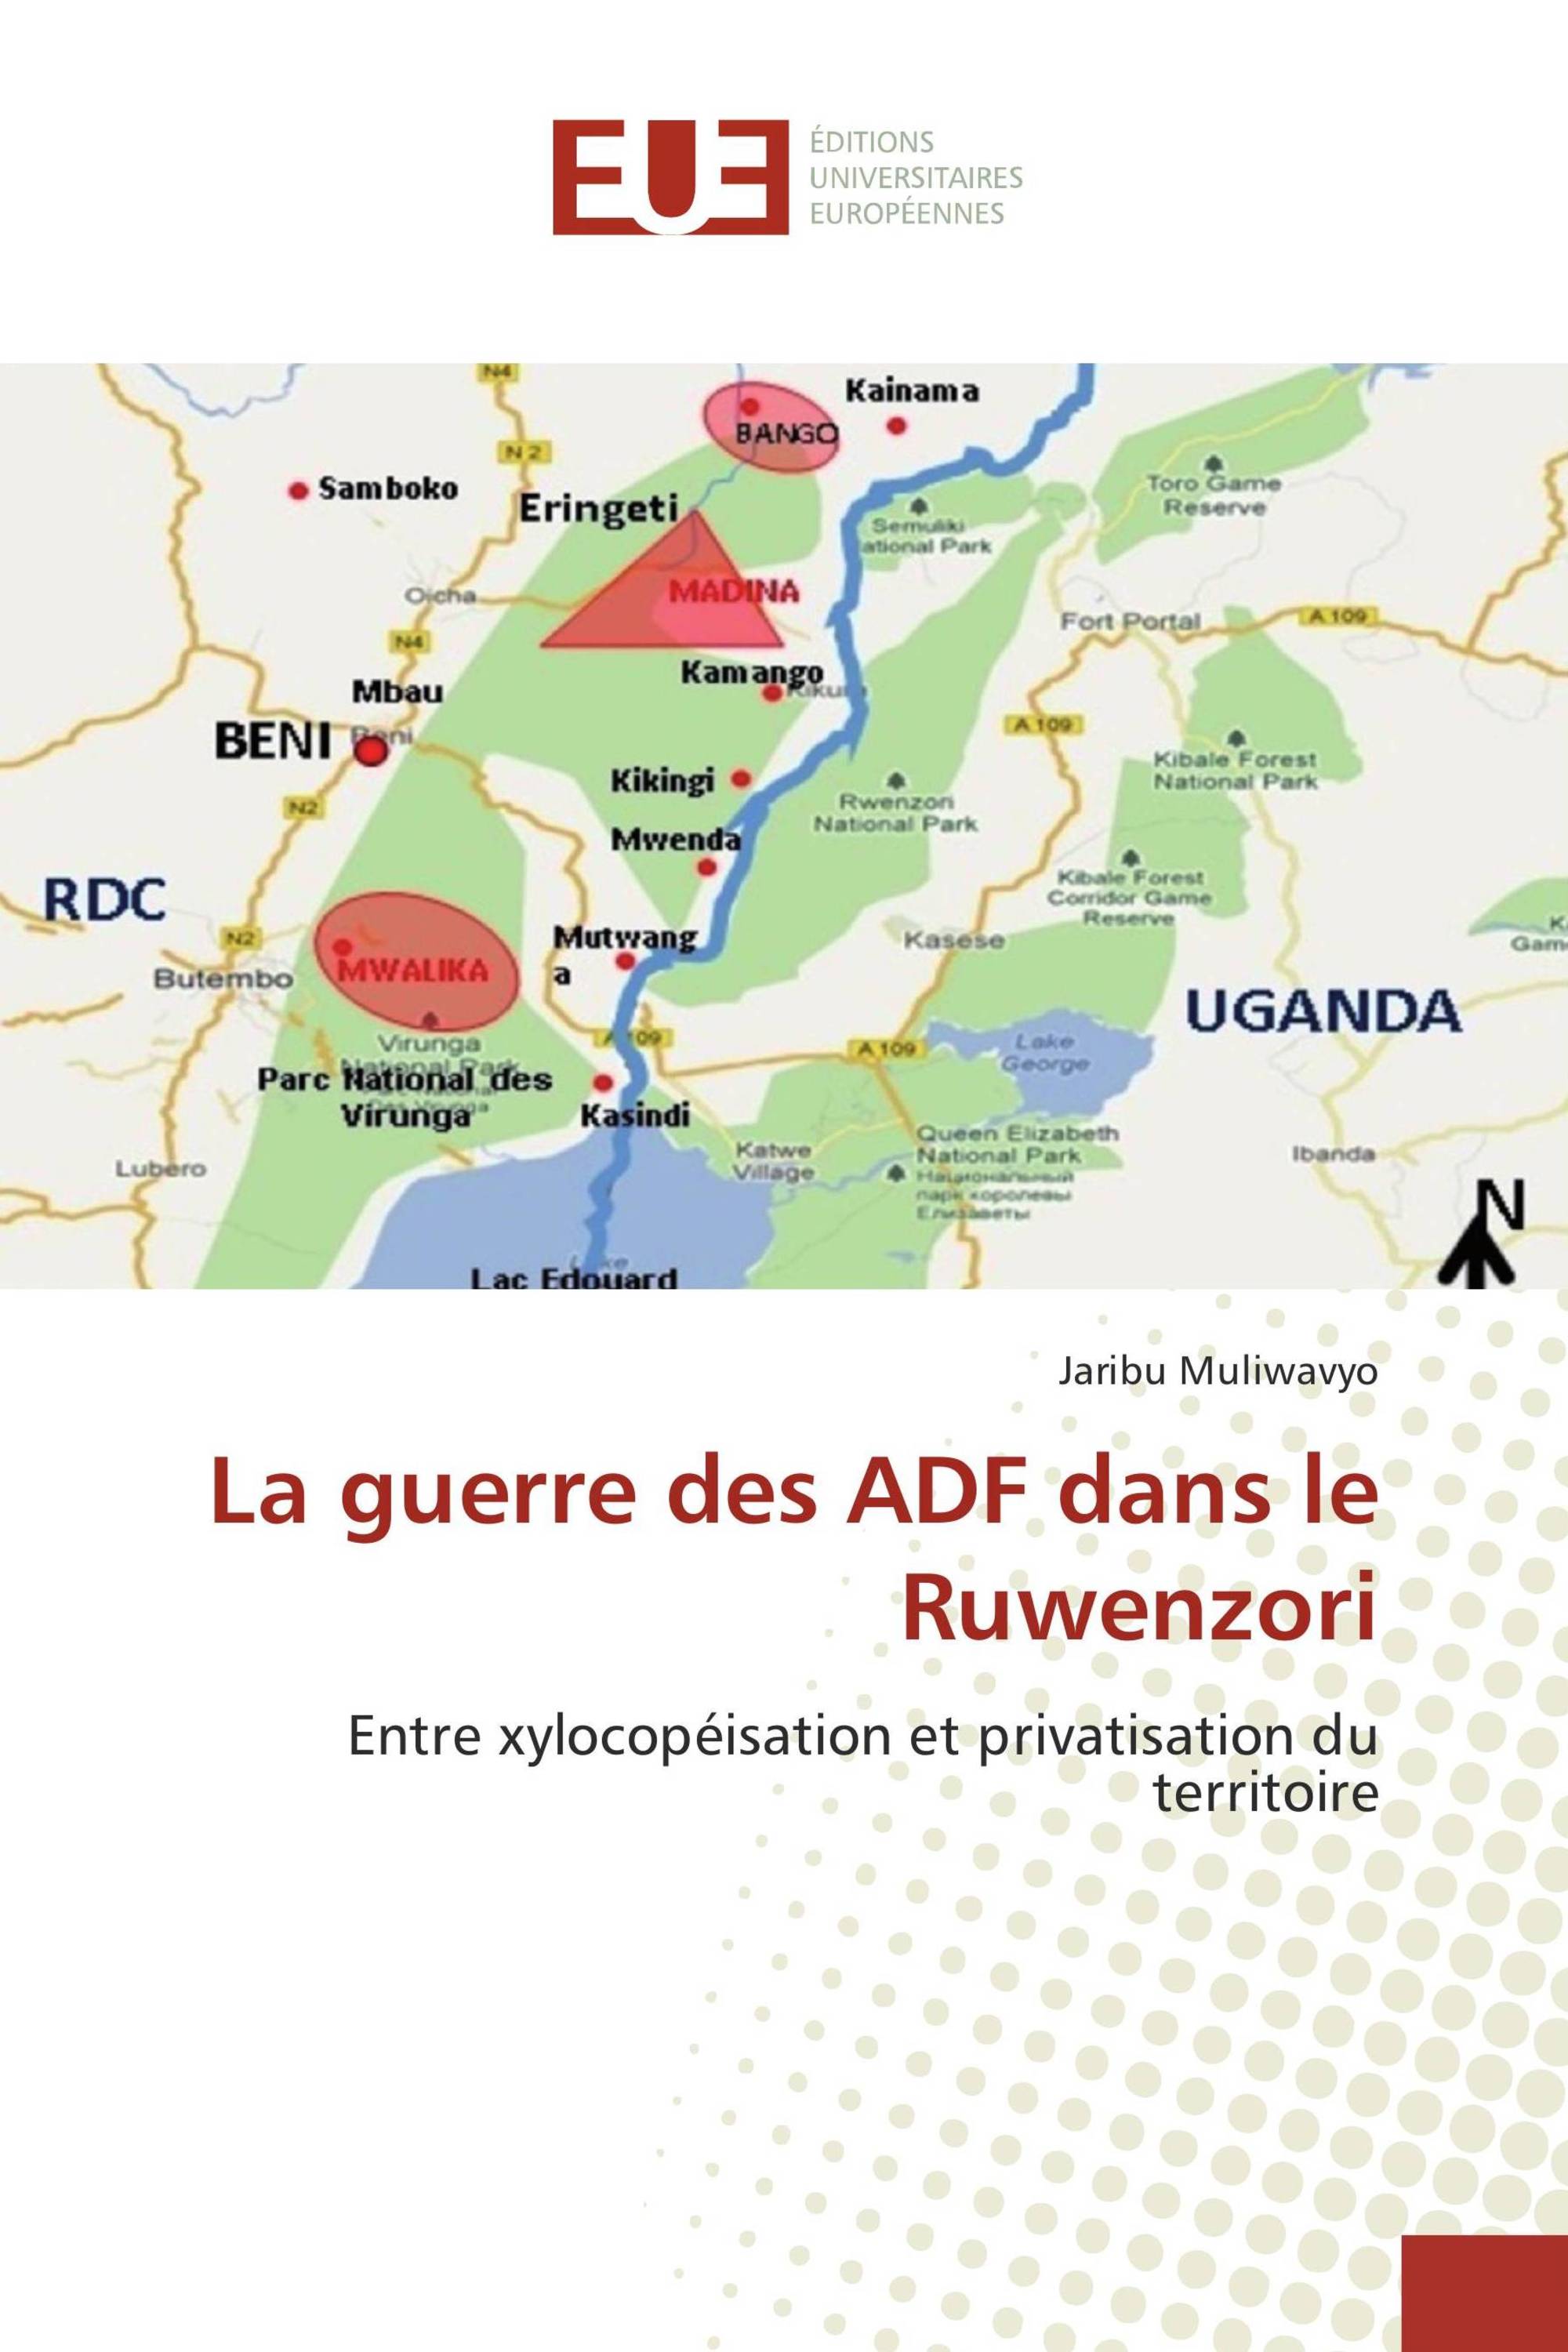 La guerre des ADF dans le Ruwenzori